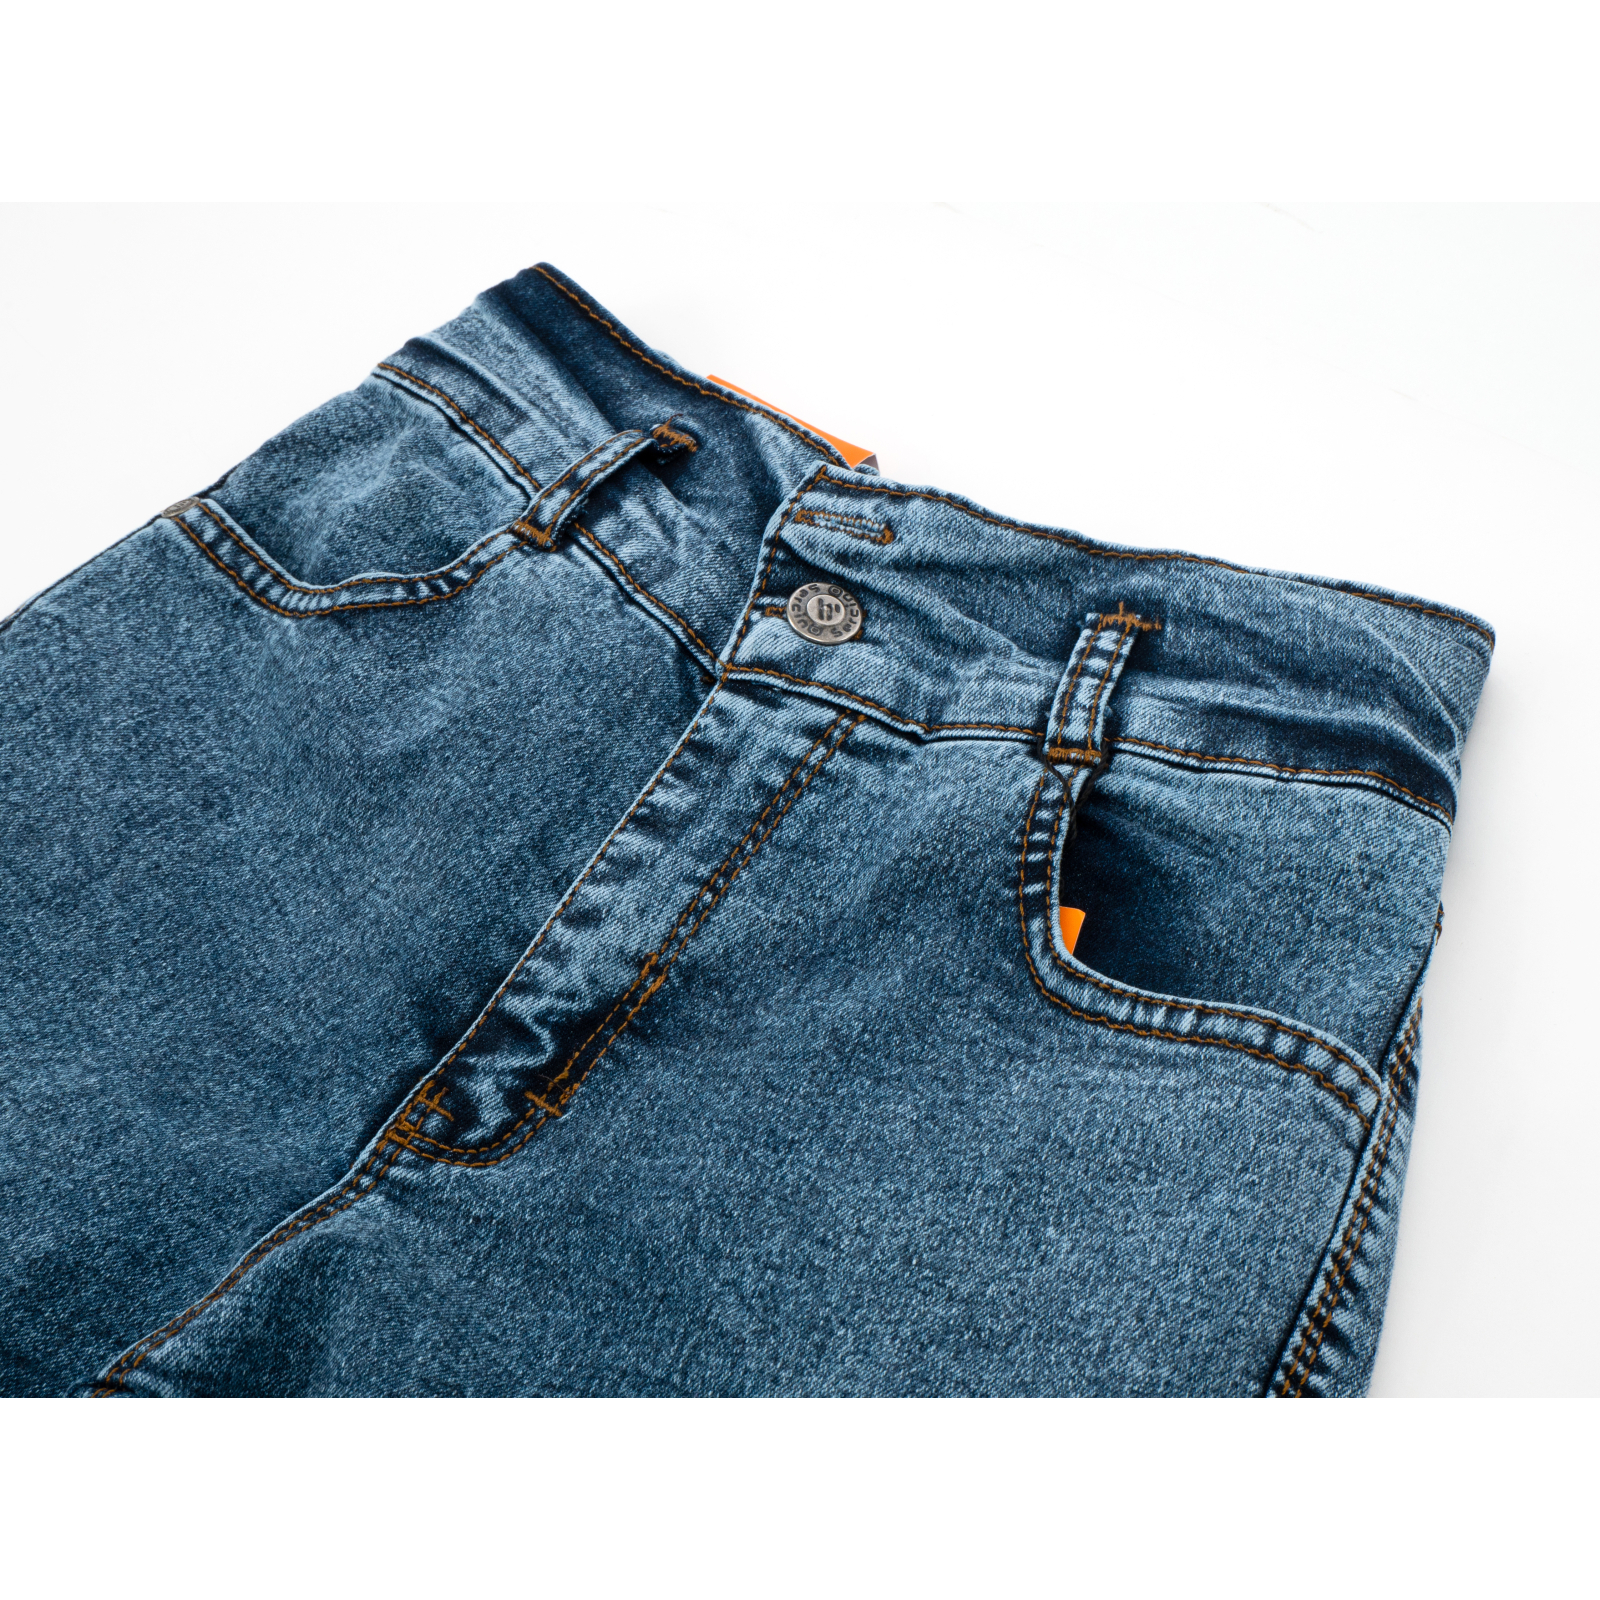 Джинсы Sercino с карманами (59654-164G-blue) изображение 3